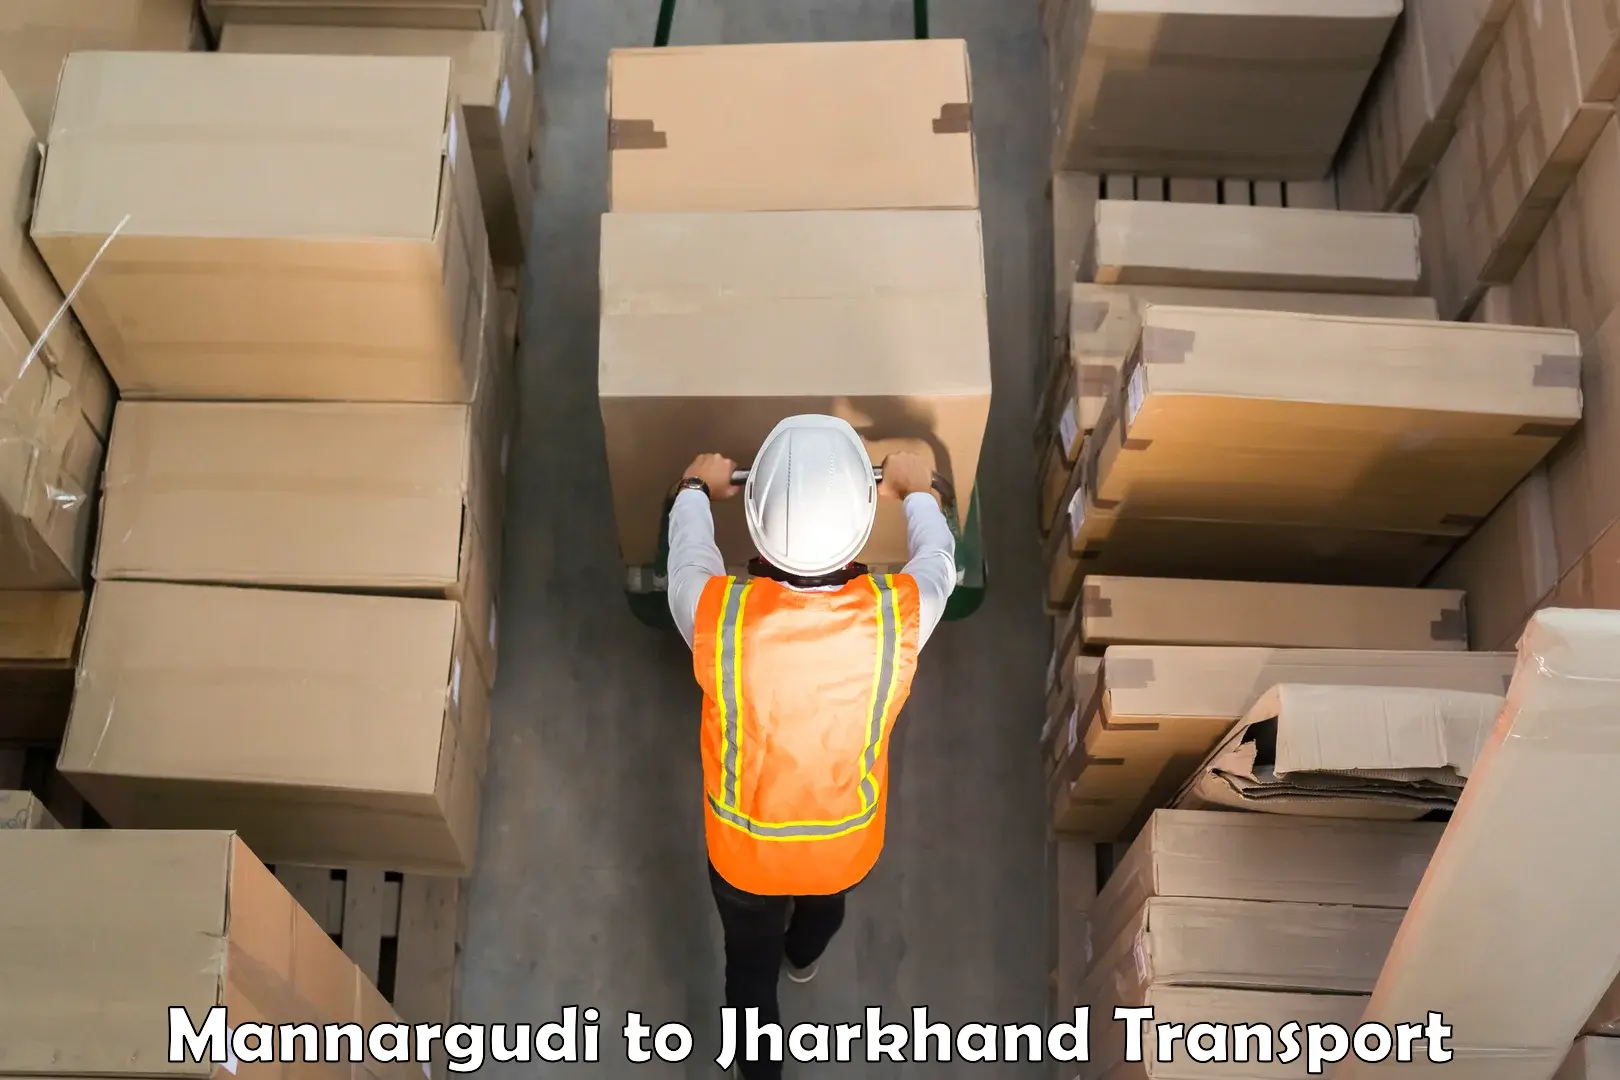 Vehicle parcel service Mannargudi to Jamshedpur